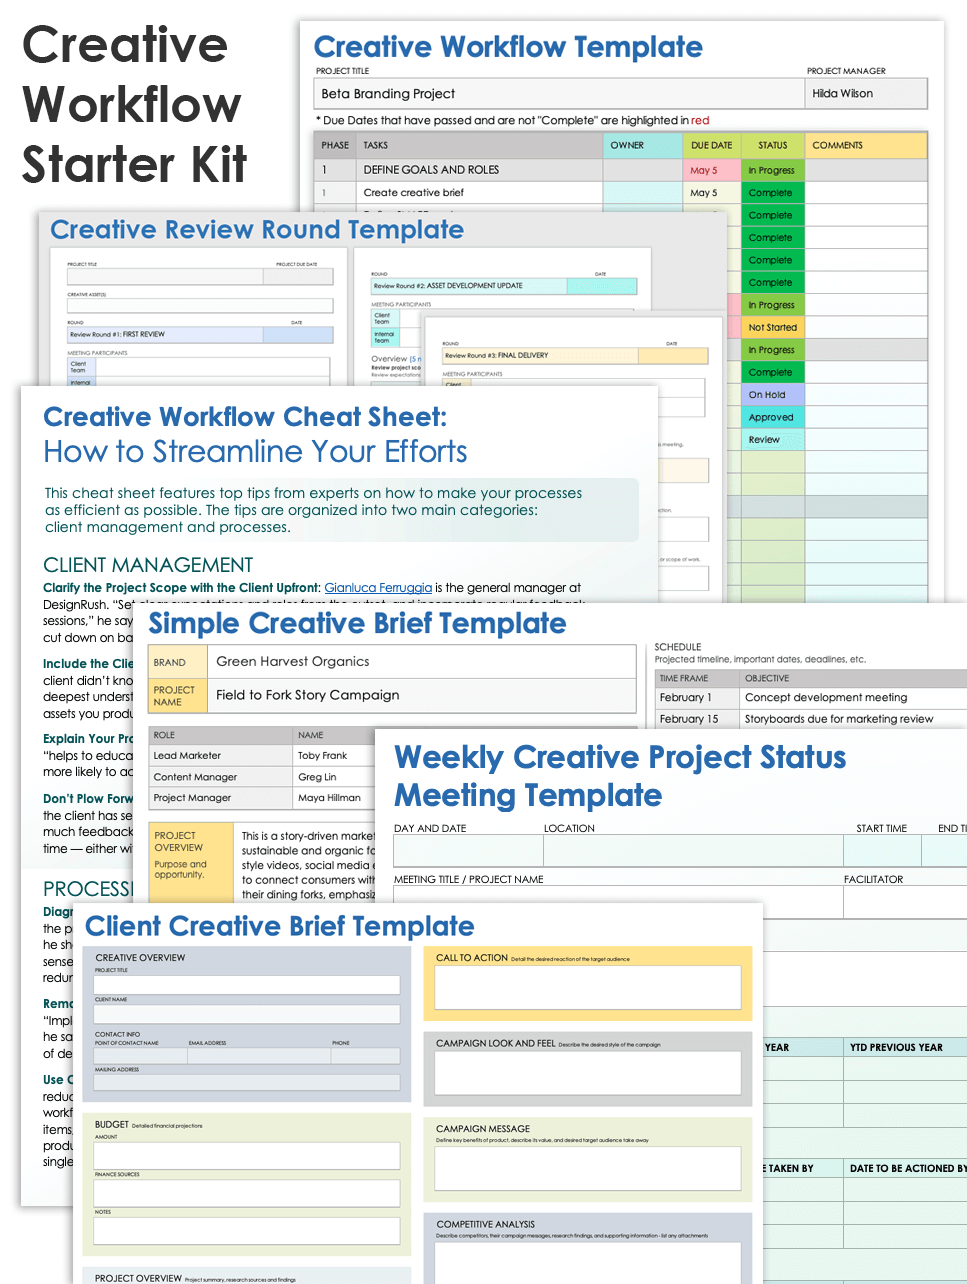 Creative Workflow Starter Kit